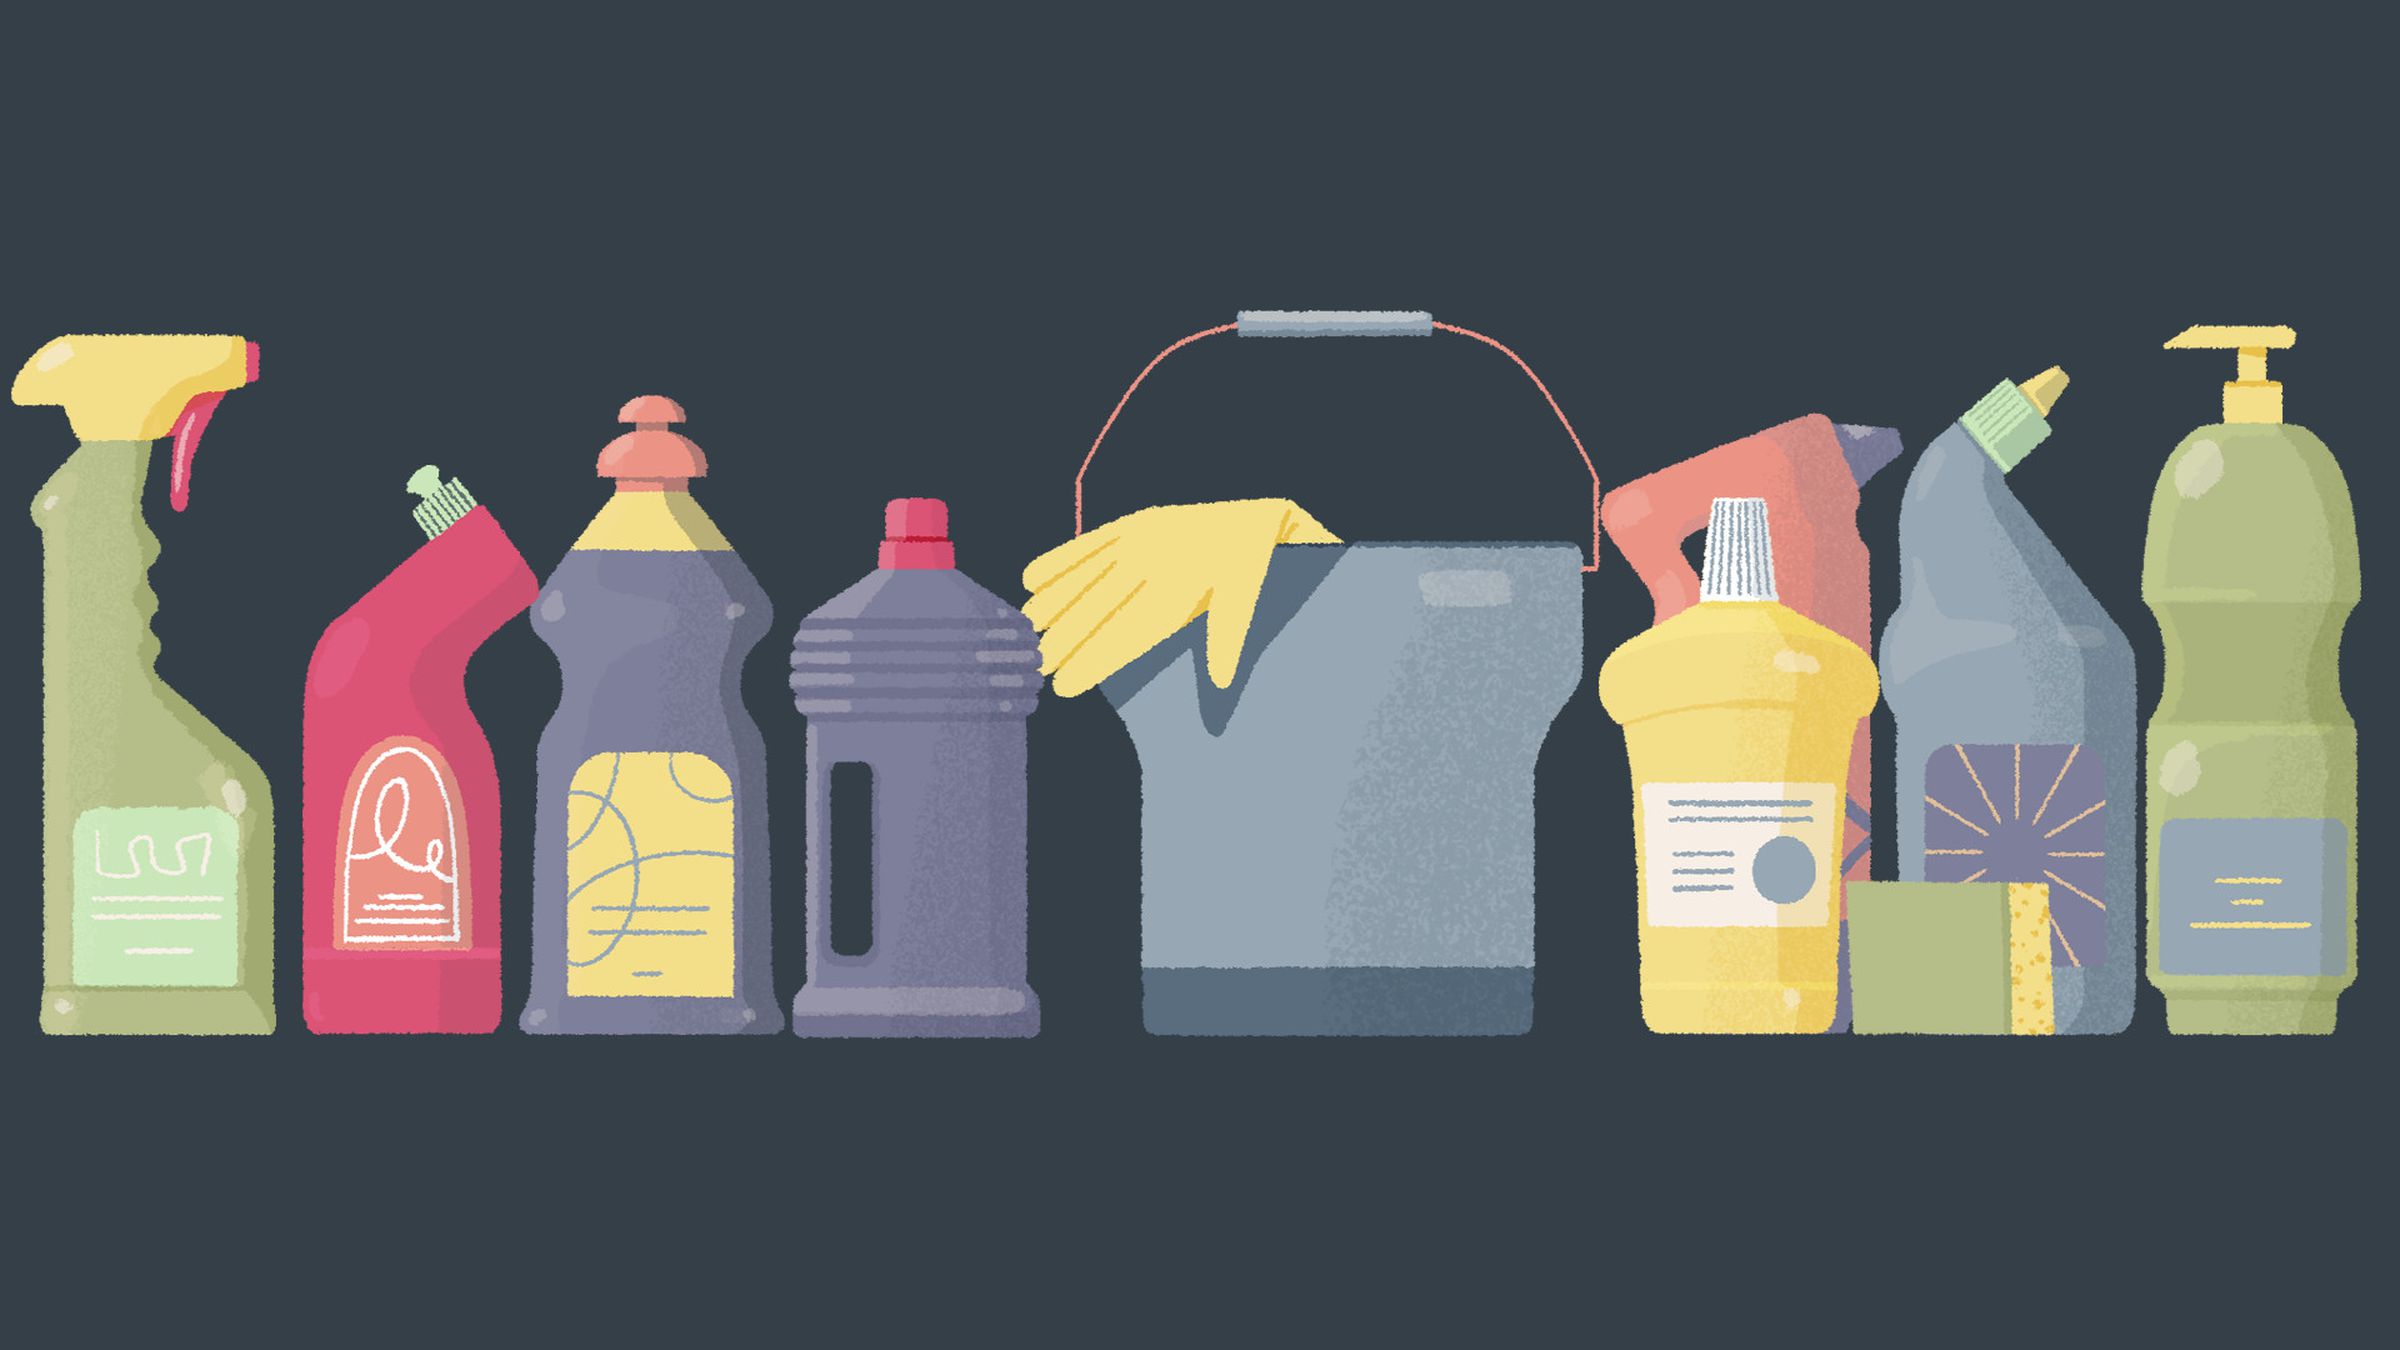 Captura de tela de A Little to the Left apresentando uma variedade de produtos de limpeza domésticos que o jogador deve colocar na ordem correta